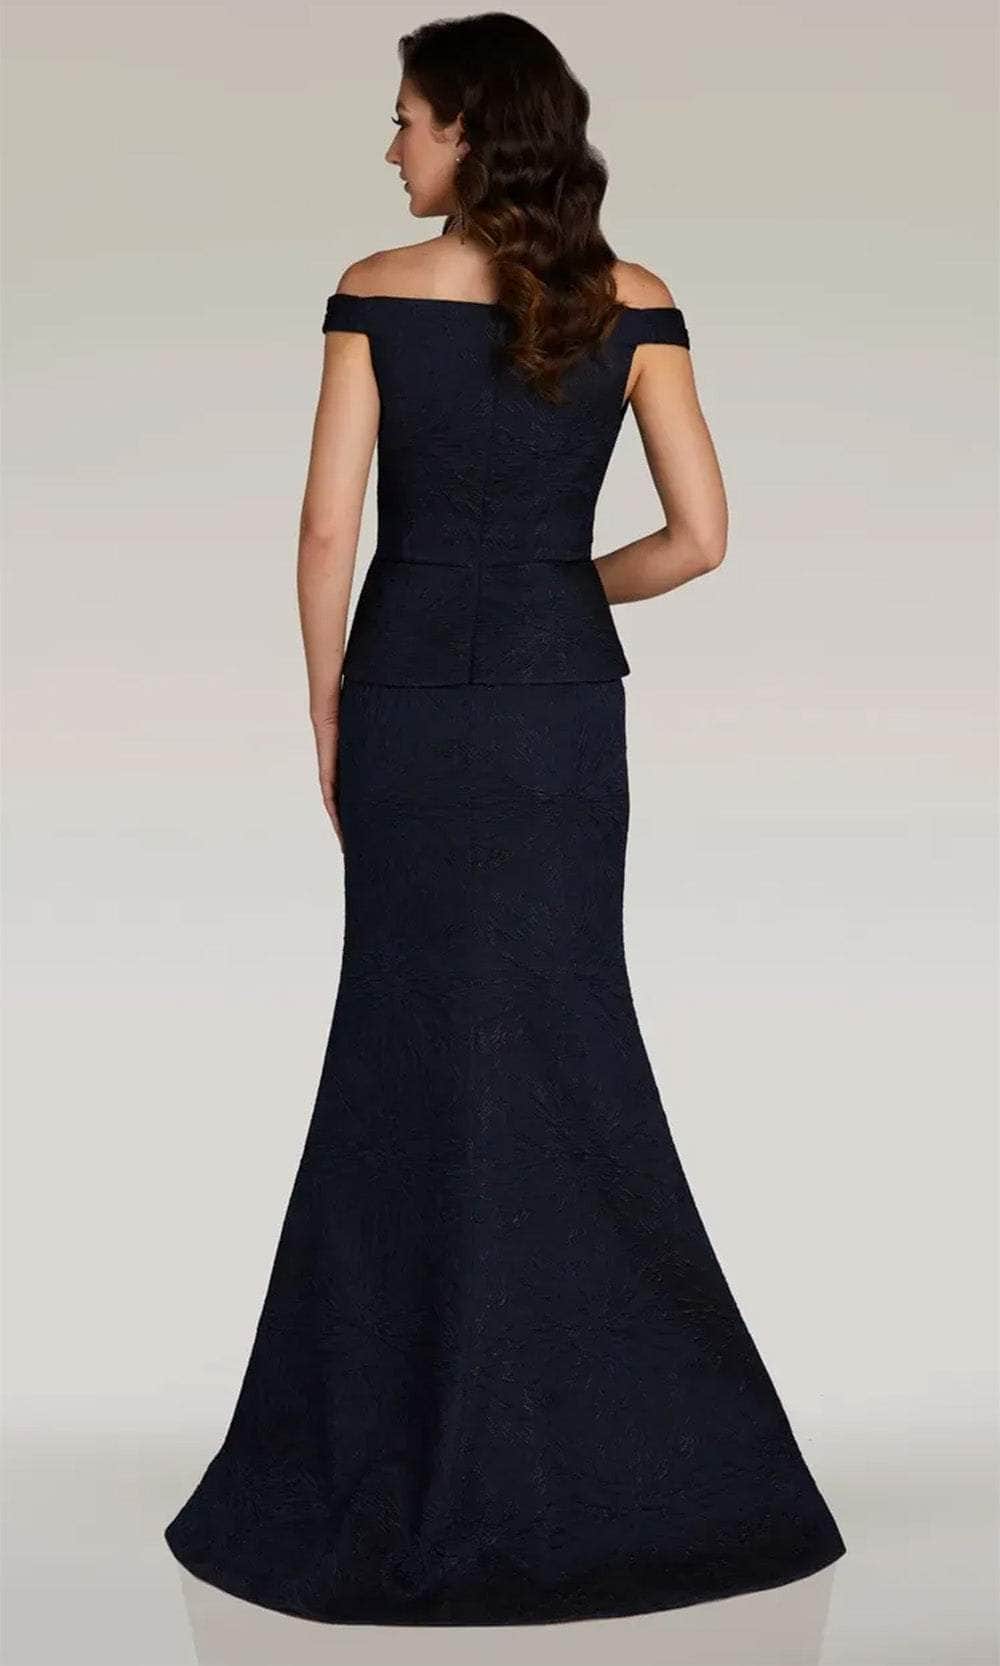 Gia Franco 12383 - Peplum Off Shoulder Evening Dress Evening Dresses 